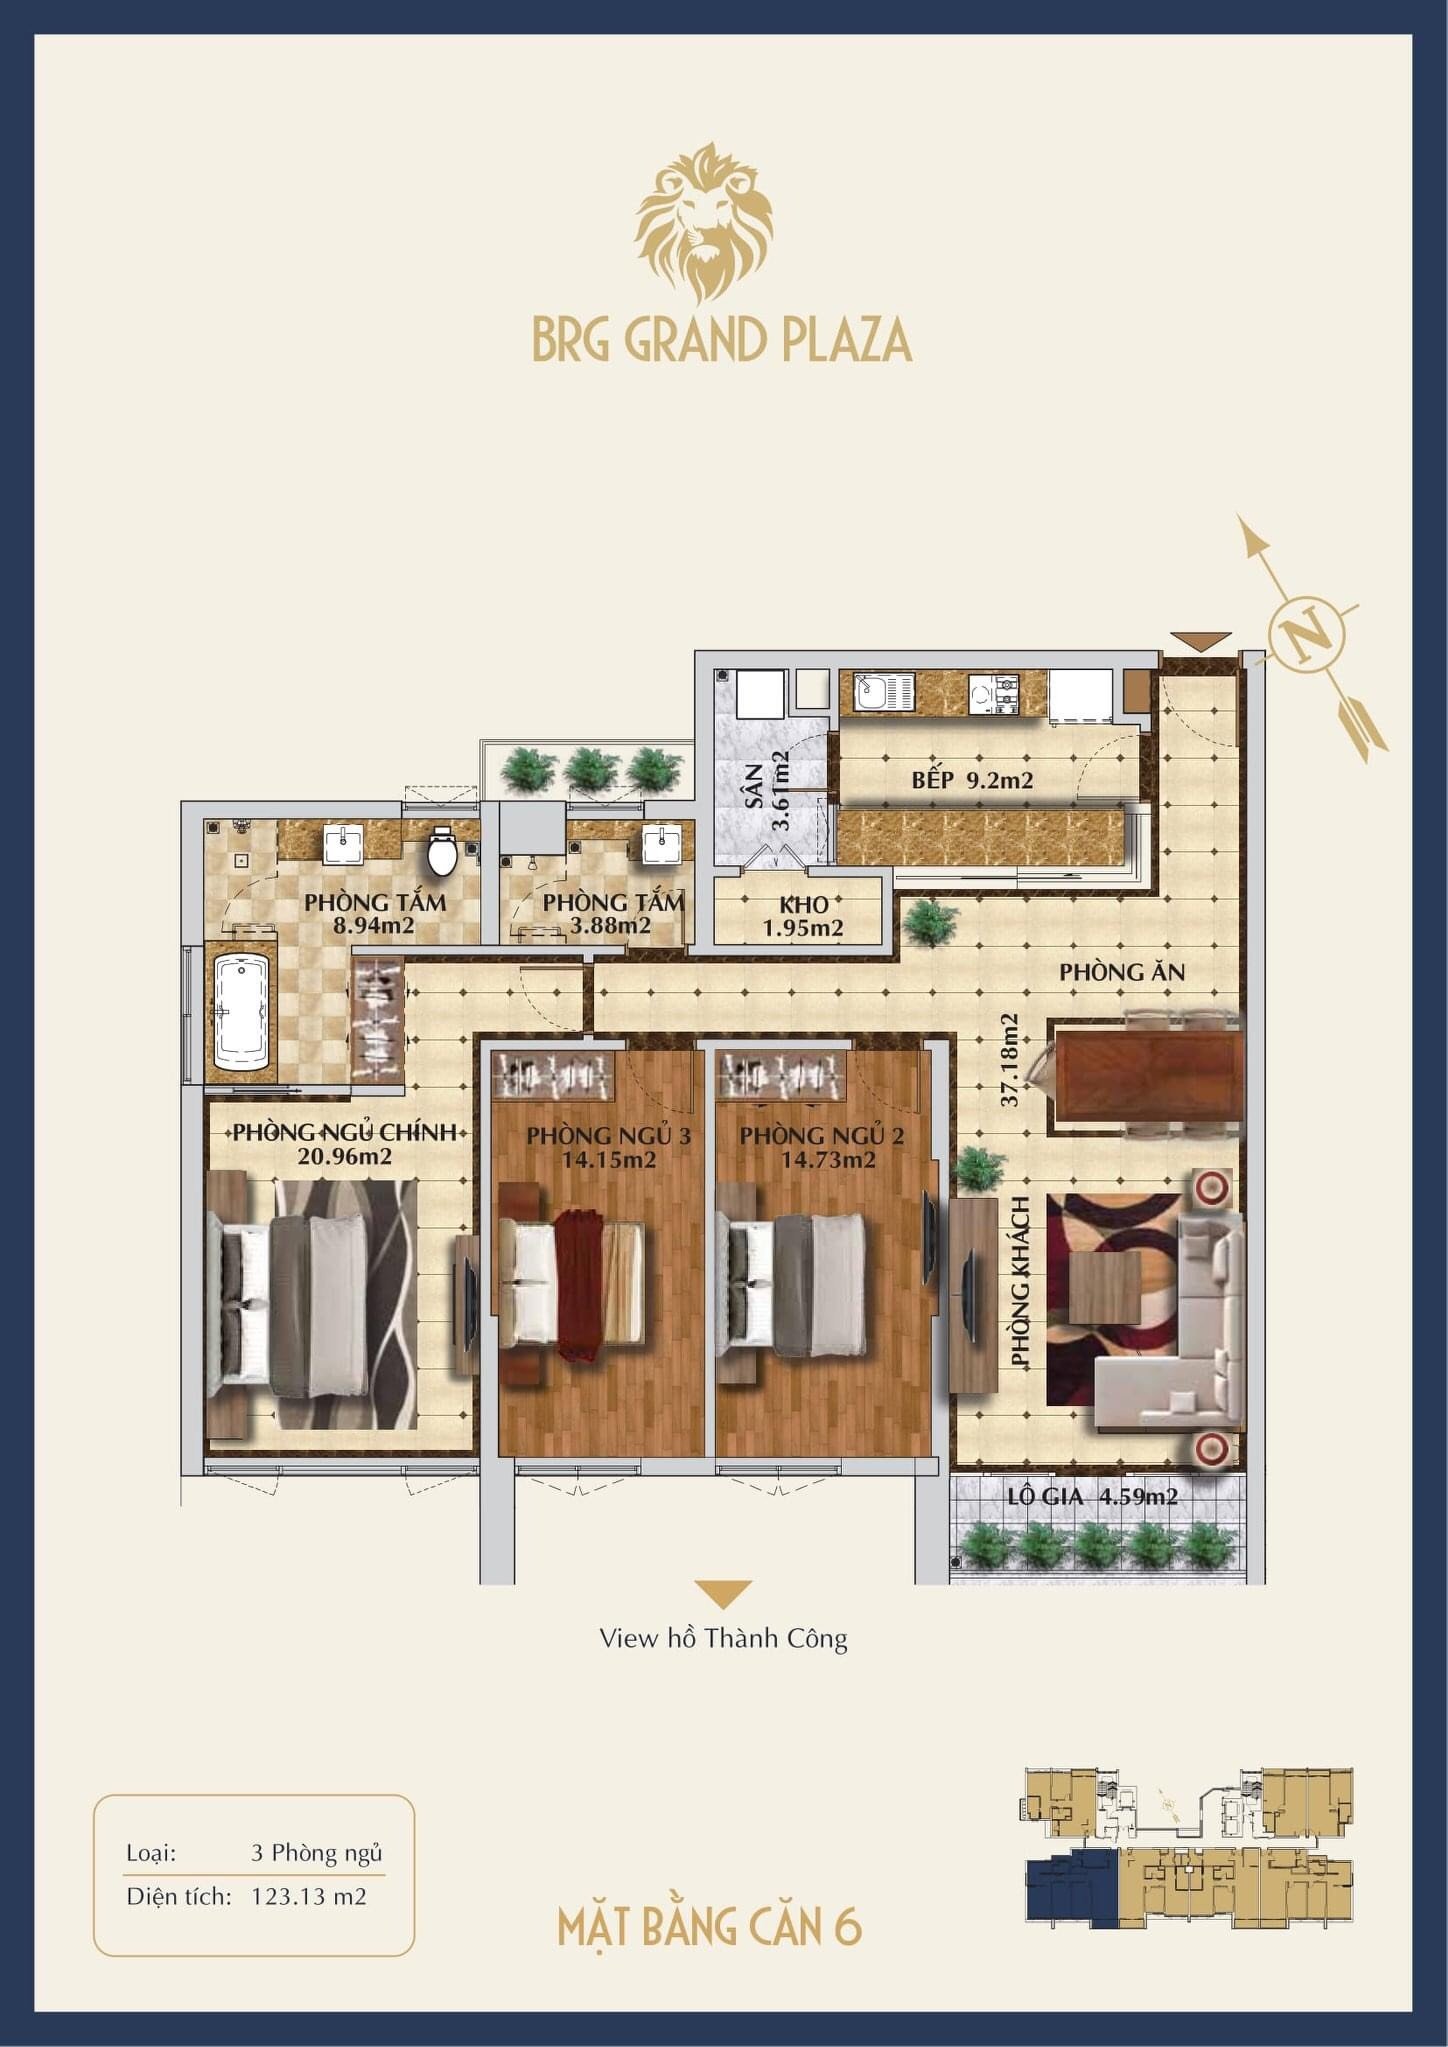 Bán chung cư trung tâm Ba Đình BRG Grand Plaza 16 Láng Hạ, view Hồ Thành Công từ 90tr/m2, vay LS 0% 2